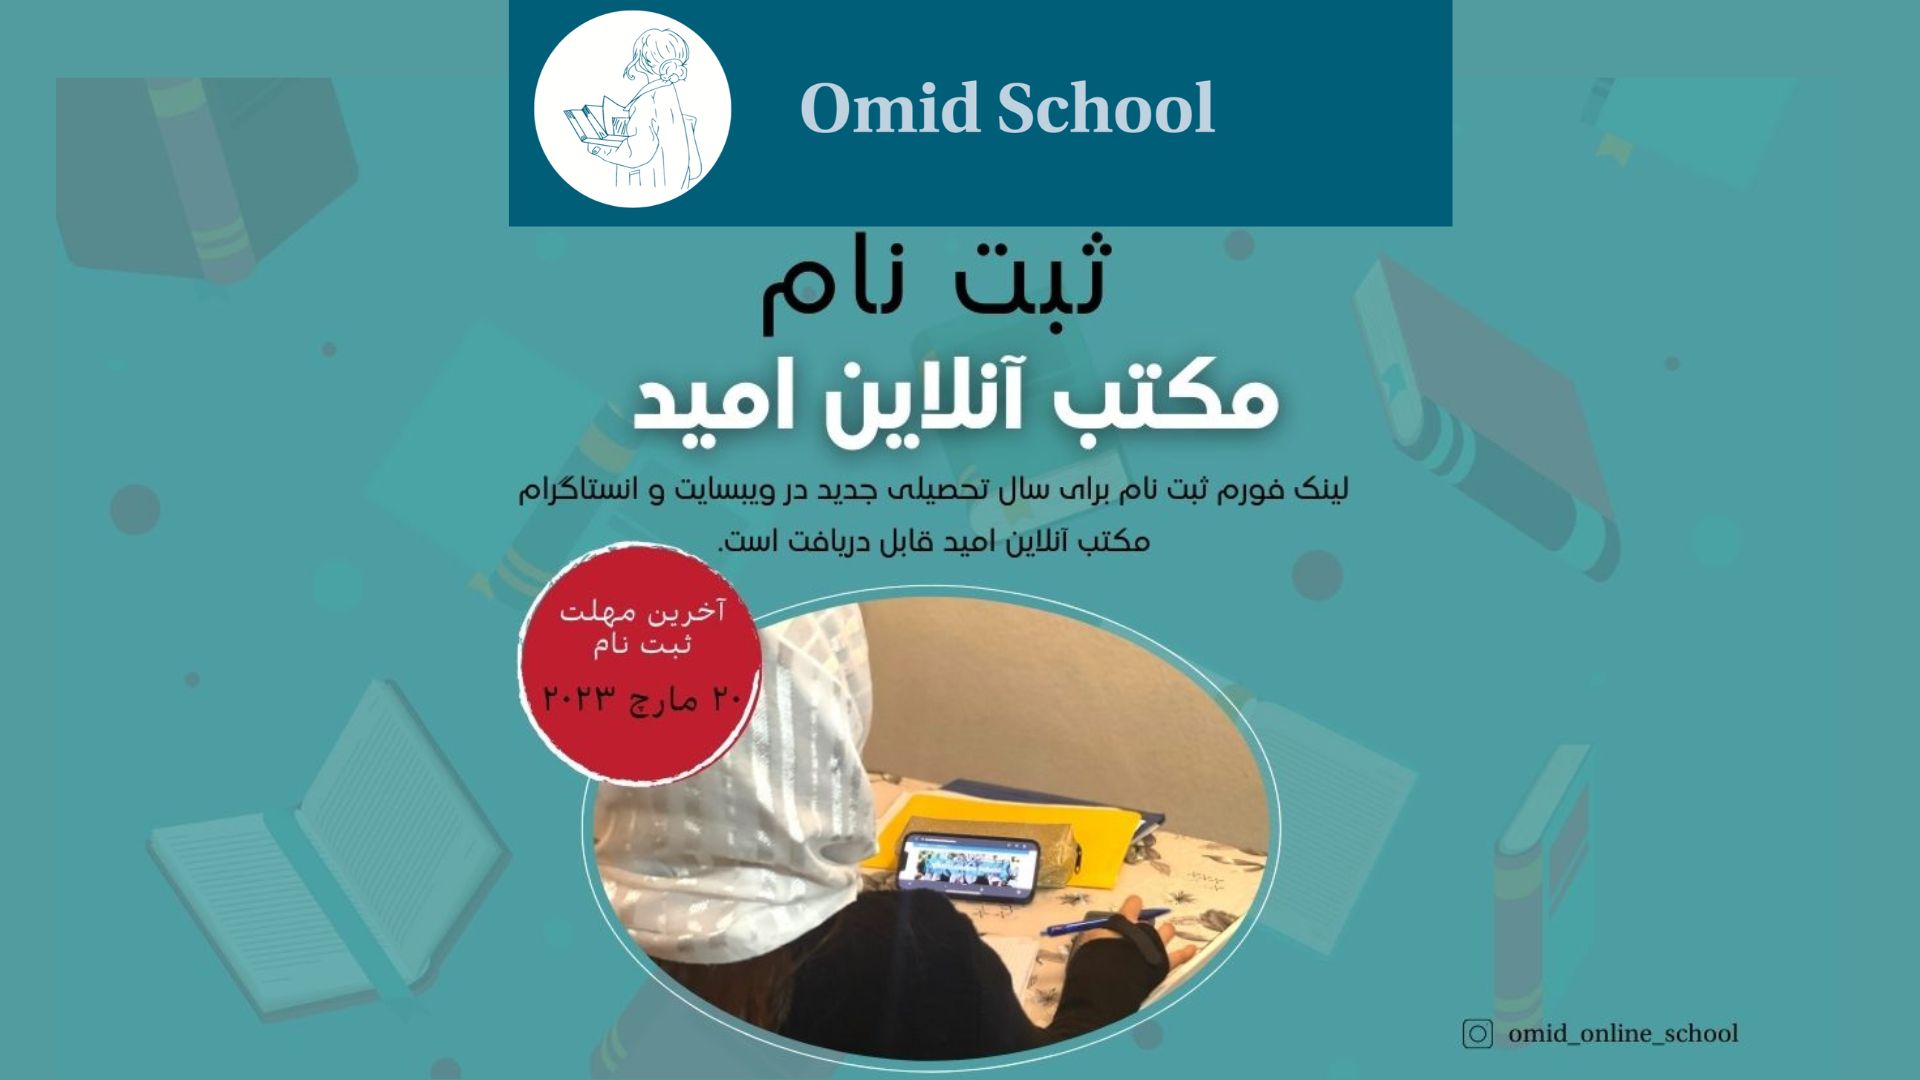 Anmeldungen für die Omid Online School geöffnet!